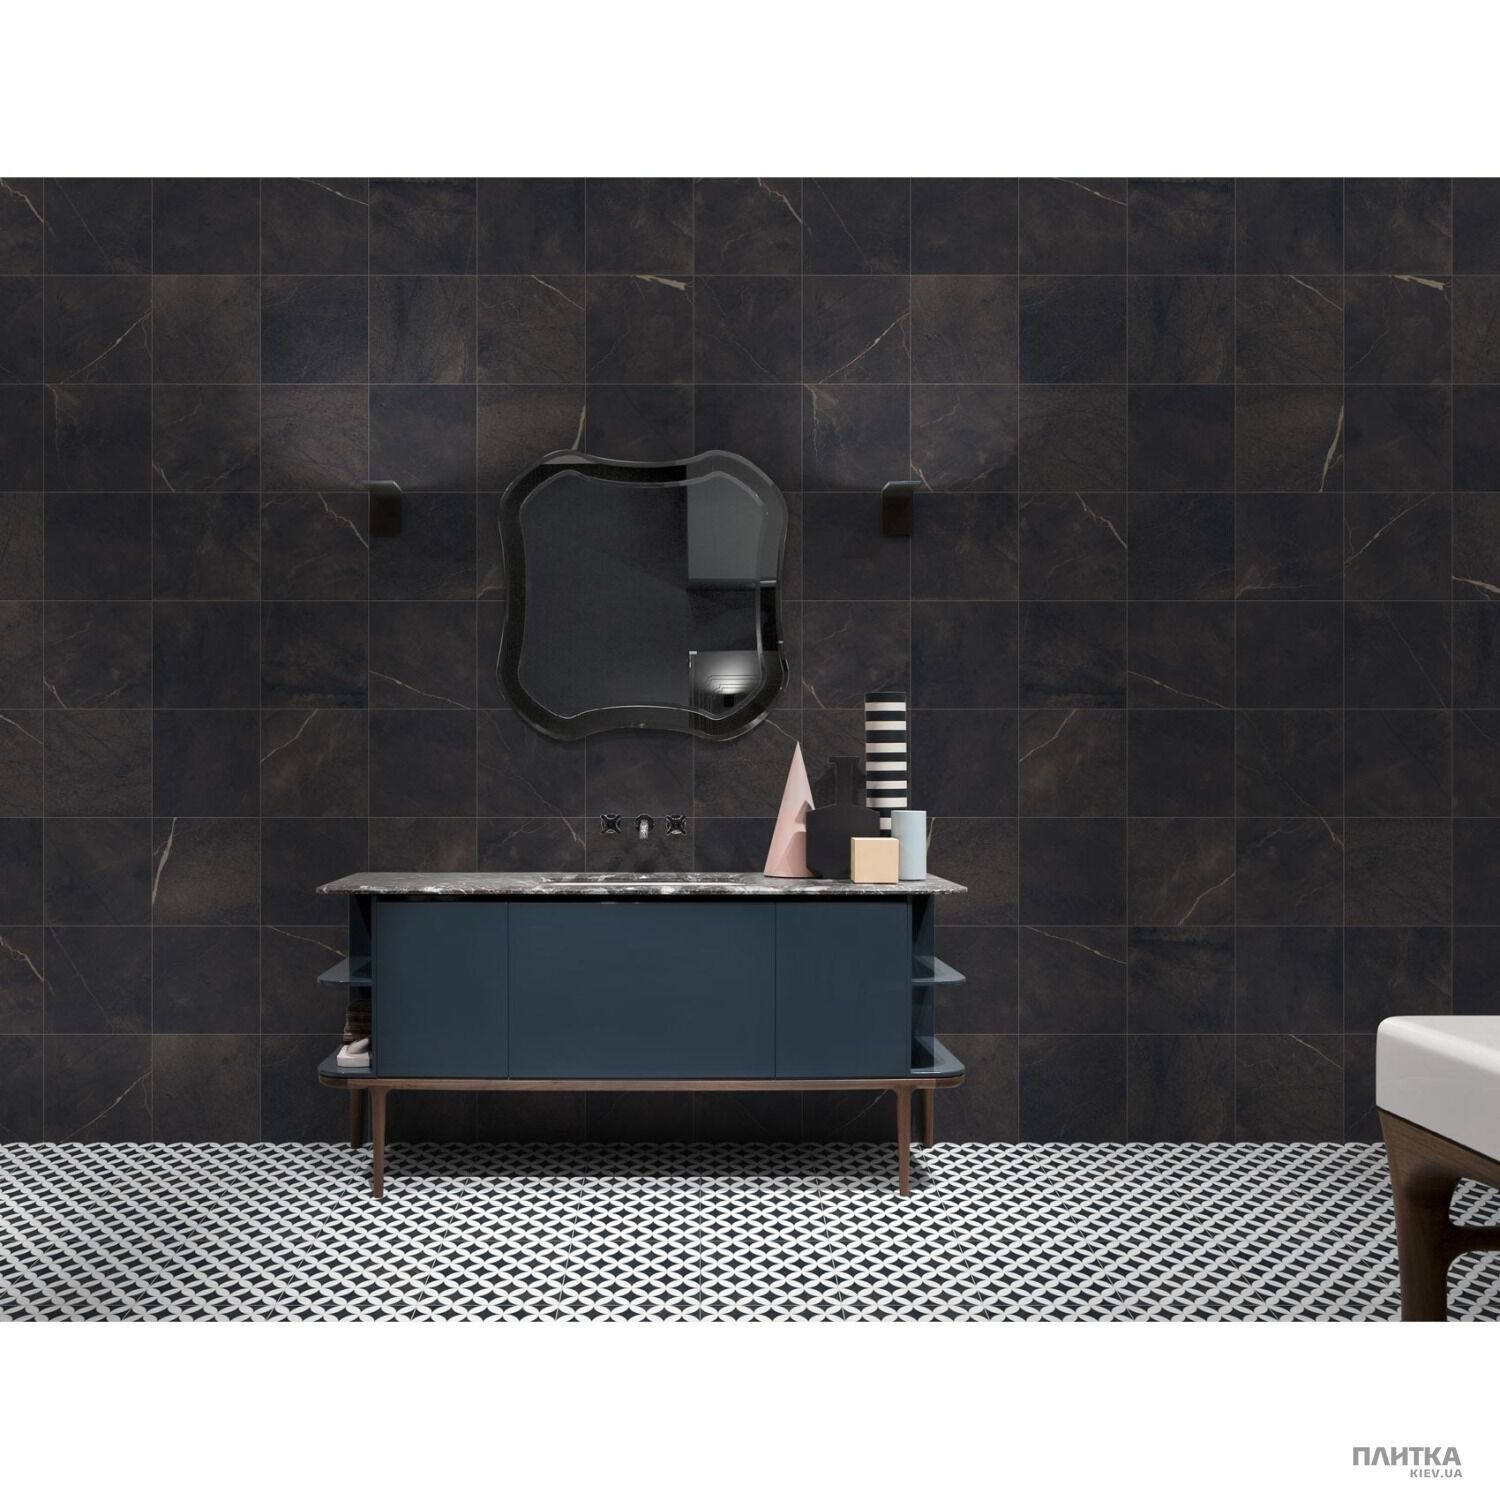 Керамогранит New Tiles Bauhaus ECED NEGRO RECT. черный